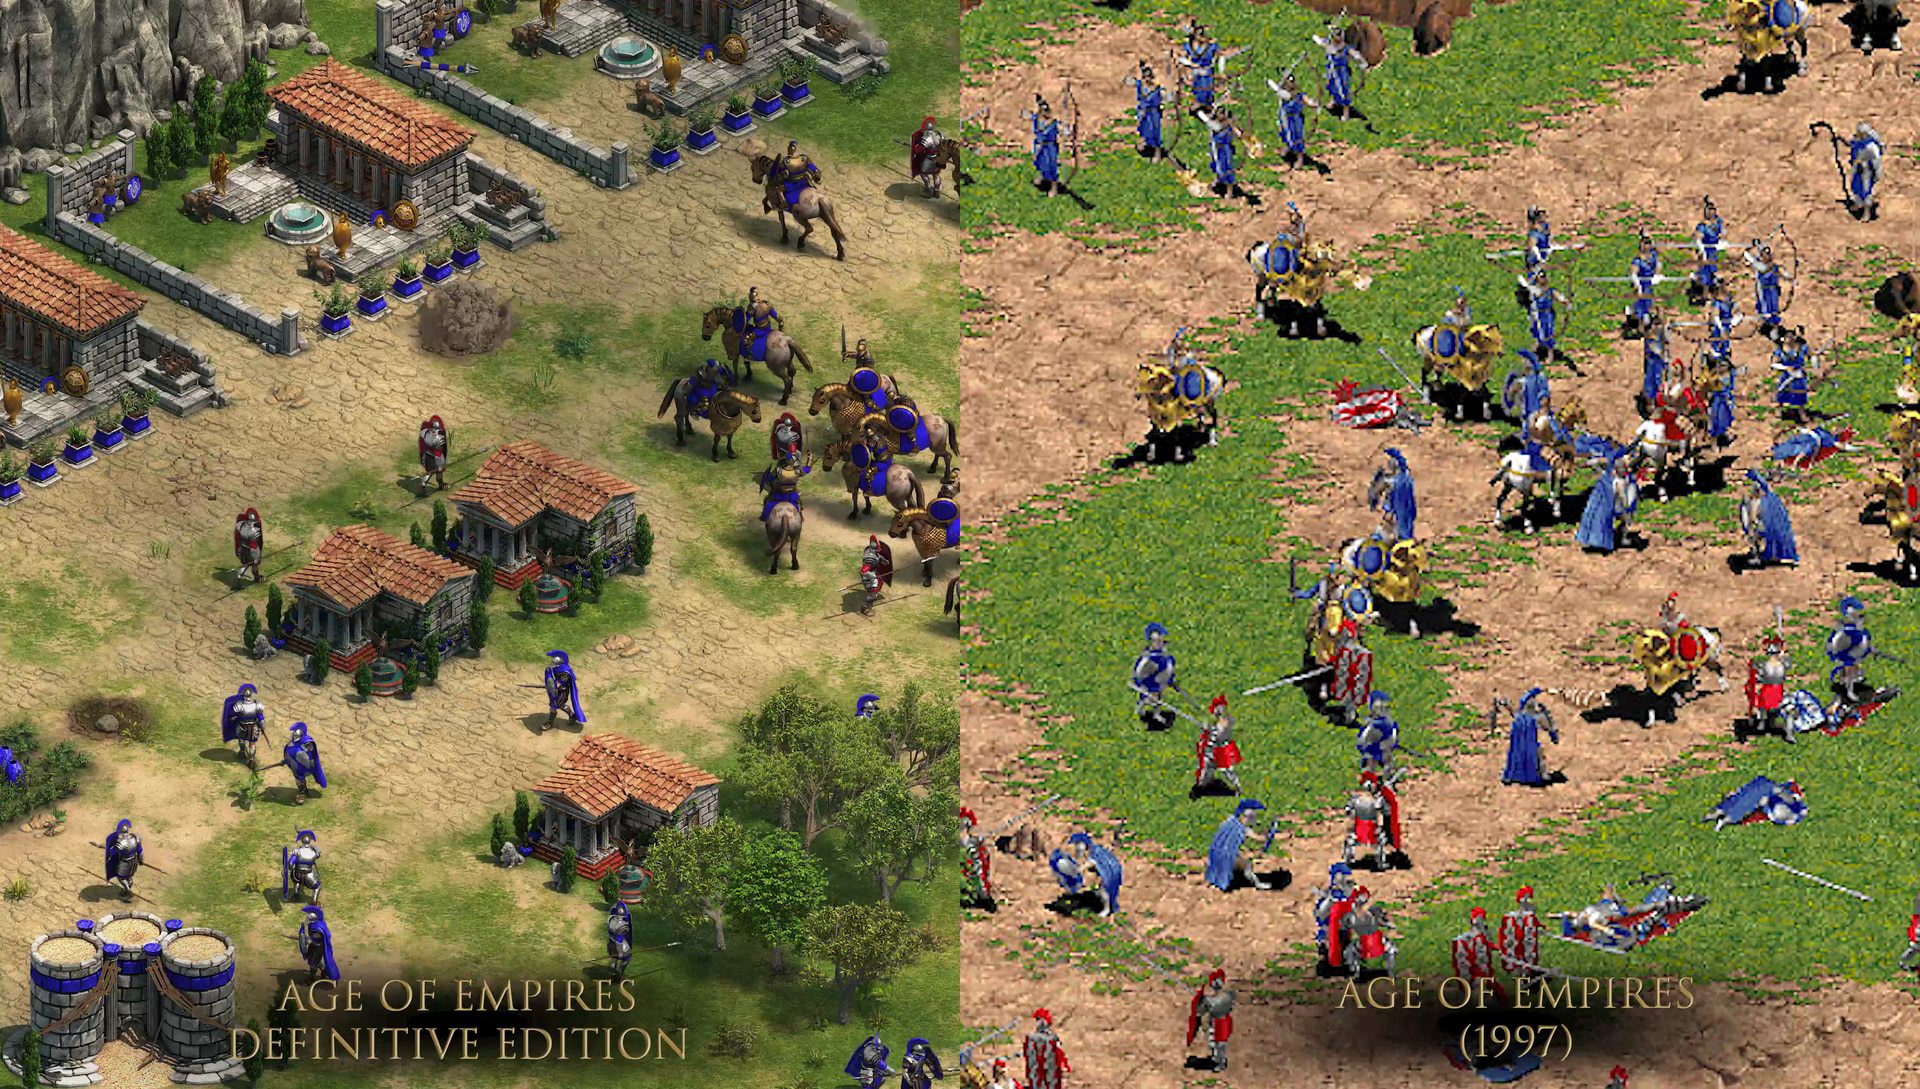 Age of Empires IV gamescom